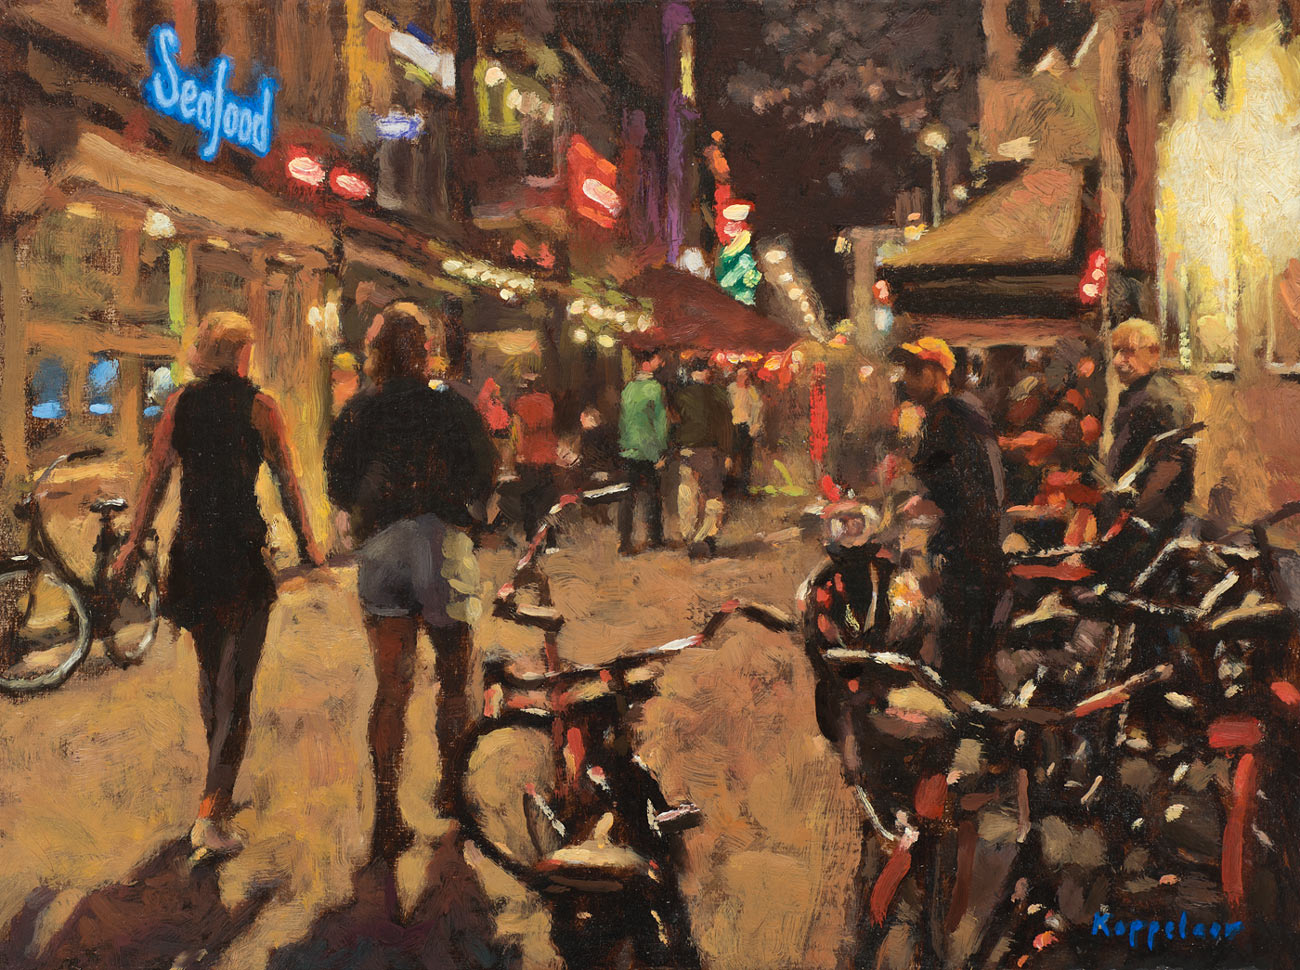 cityscape: 'Korte Leidsedwarsstraat by Night' oil on panel by Dutch painter Frans Koppelaar.